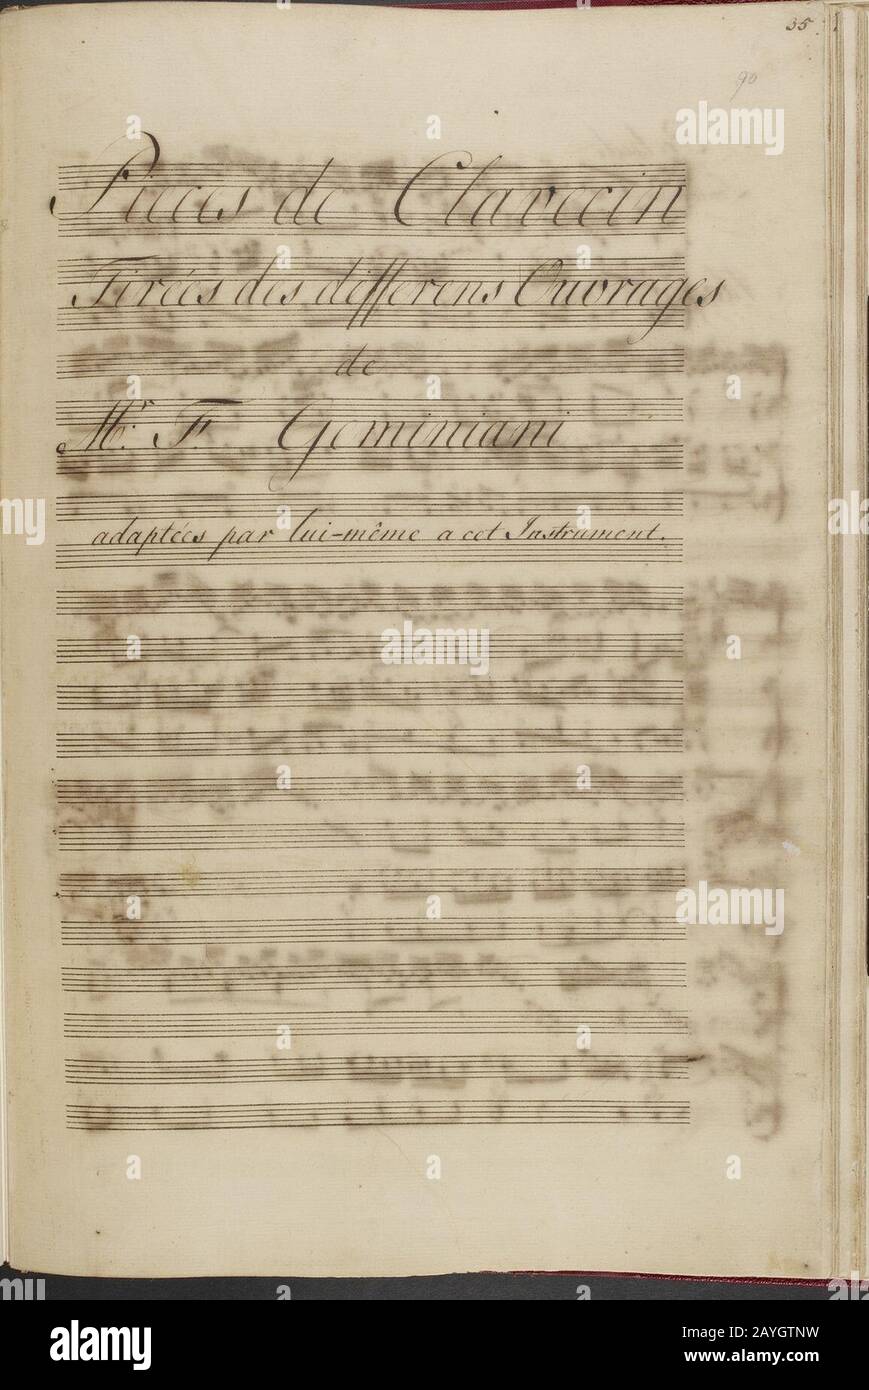 Francesco Saverio Geminiani - Pièces de clavecin. (BL Add MS 16155 f. 90r). Stock Photo